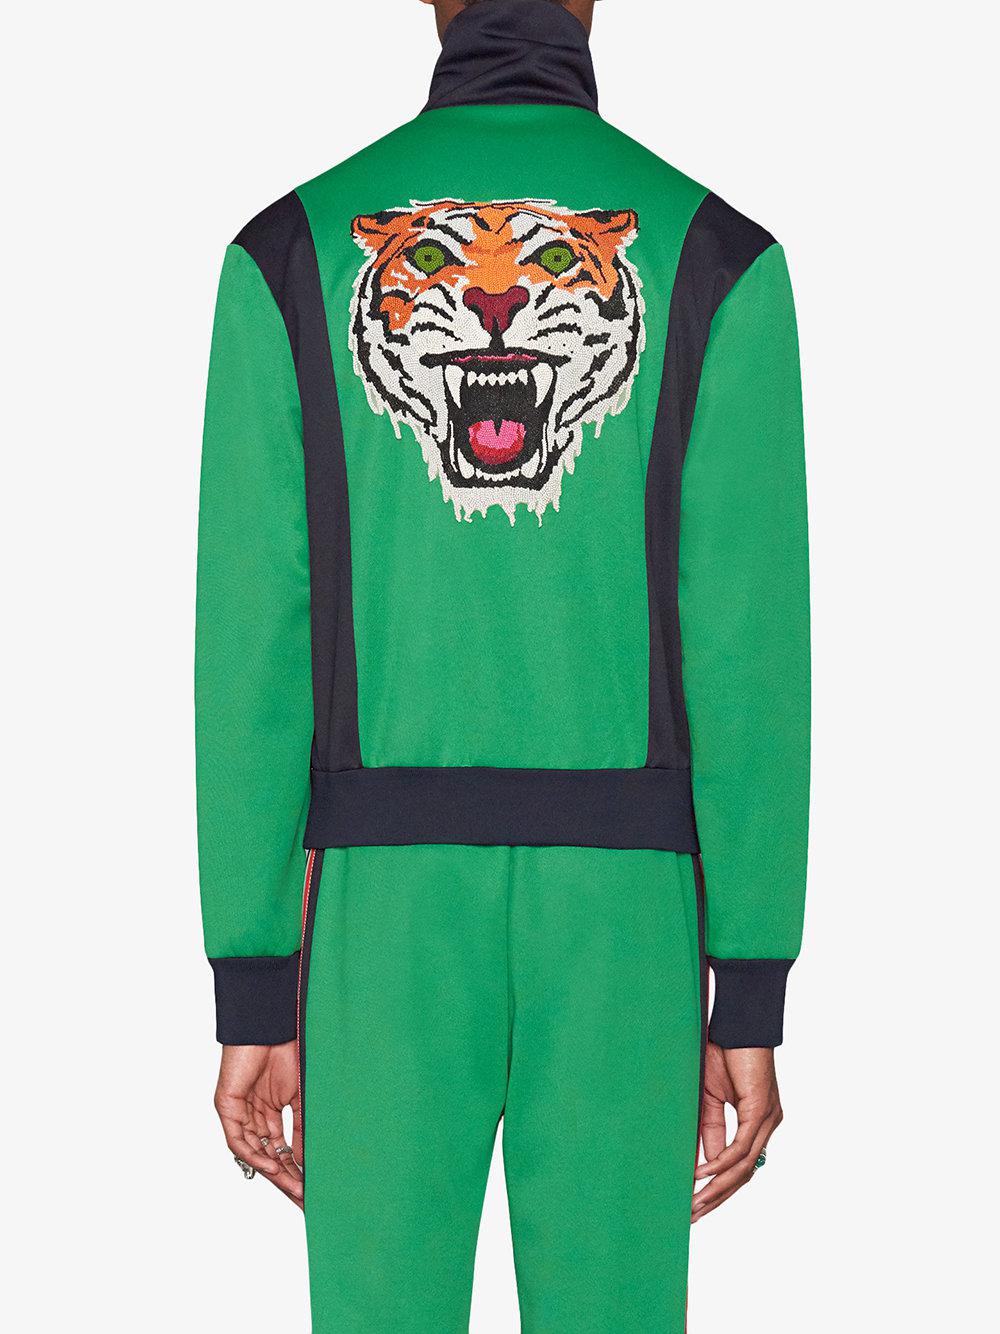 gucci tiger track jacket, OFF 78%,www 